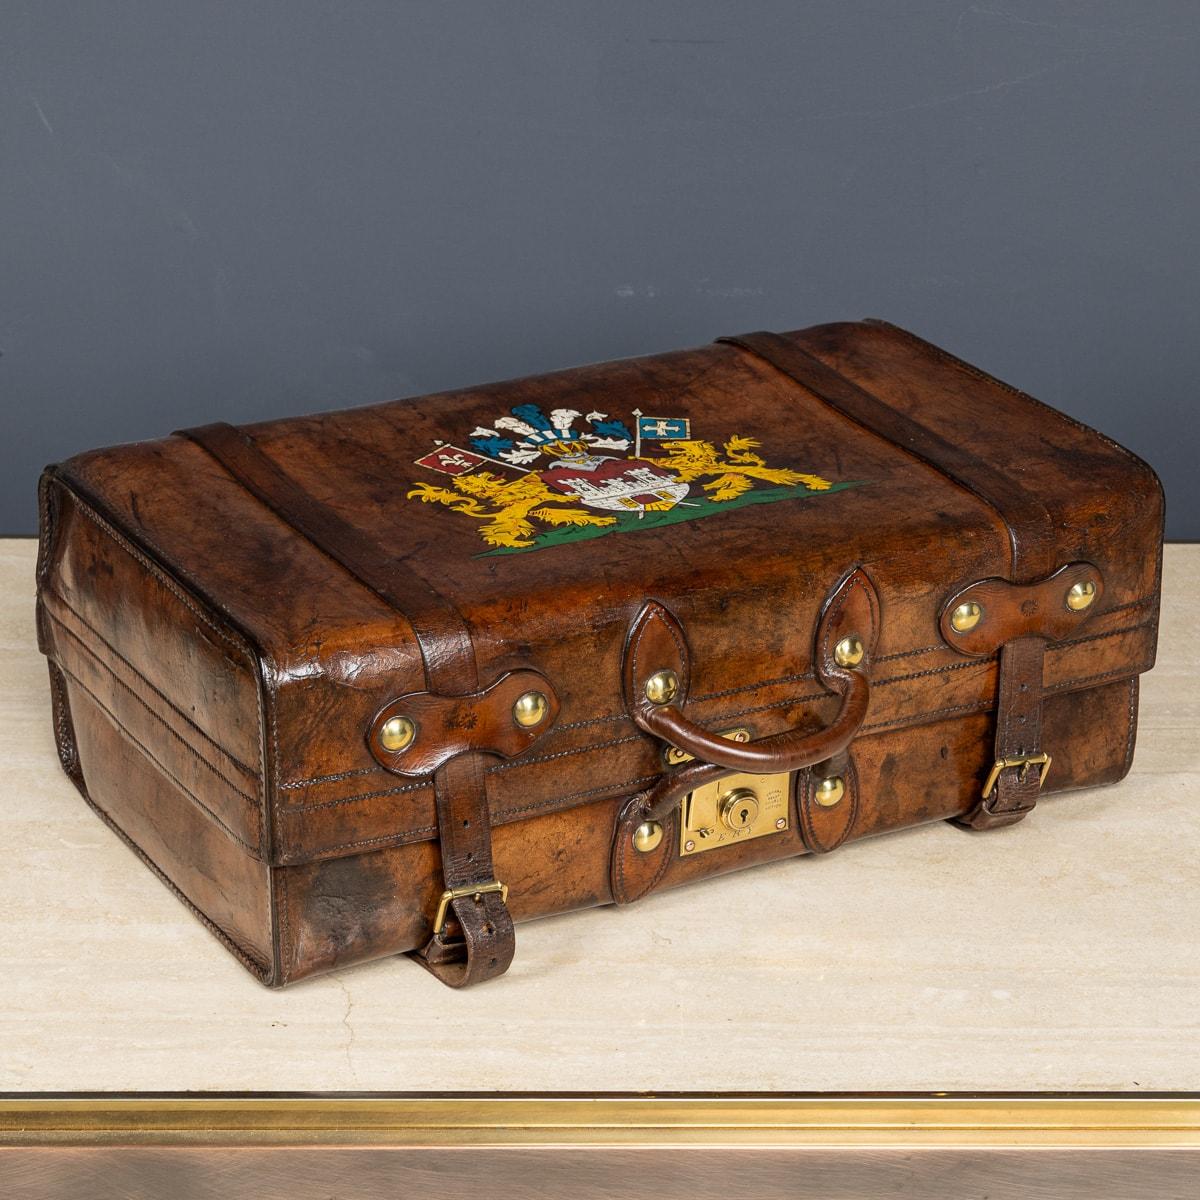 Antiker viktorianischer Lederkoffer aus der Mitte des 19. Jahrhunderts mit einem gemalten Familienwappen. Der Koffer ist sehr gut erhalten und verfügt über das originale Baumwollfutter, Dokumentenhalter und Staubschutzhüllen mit Lederriemen. Überall